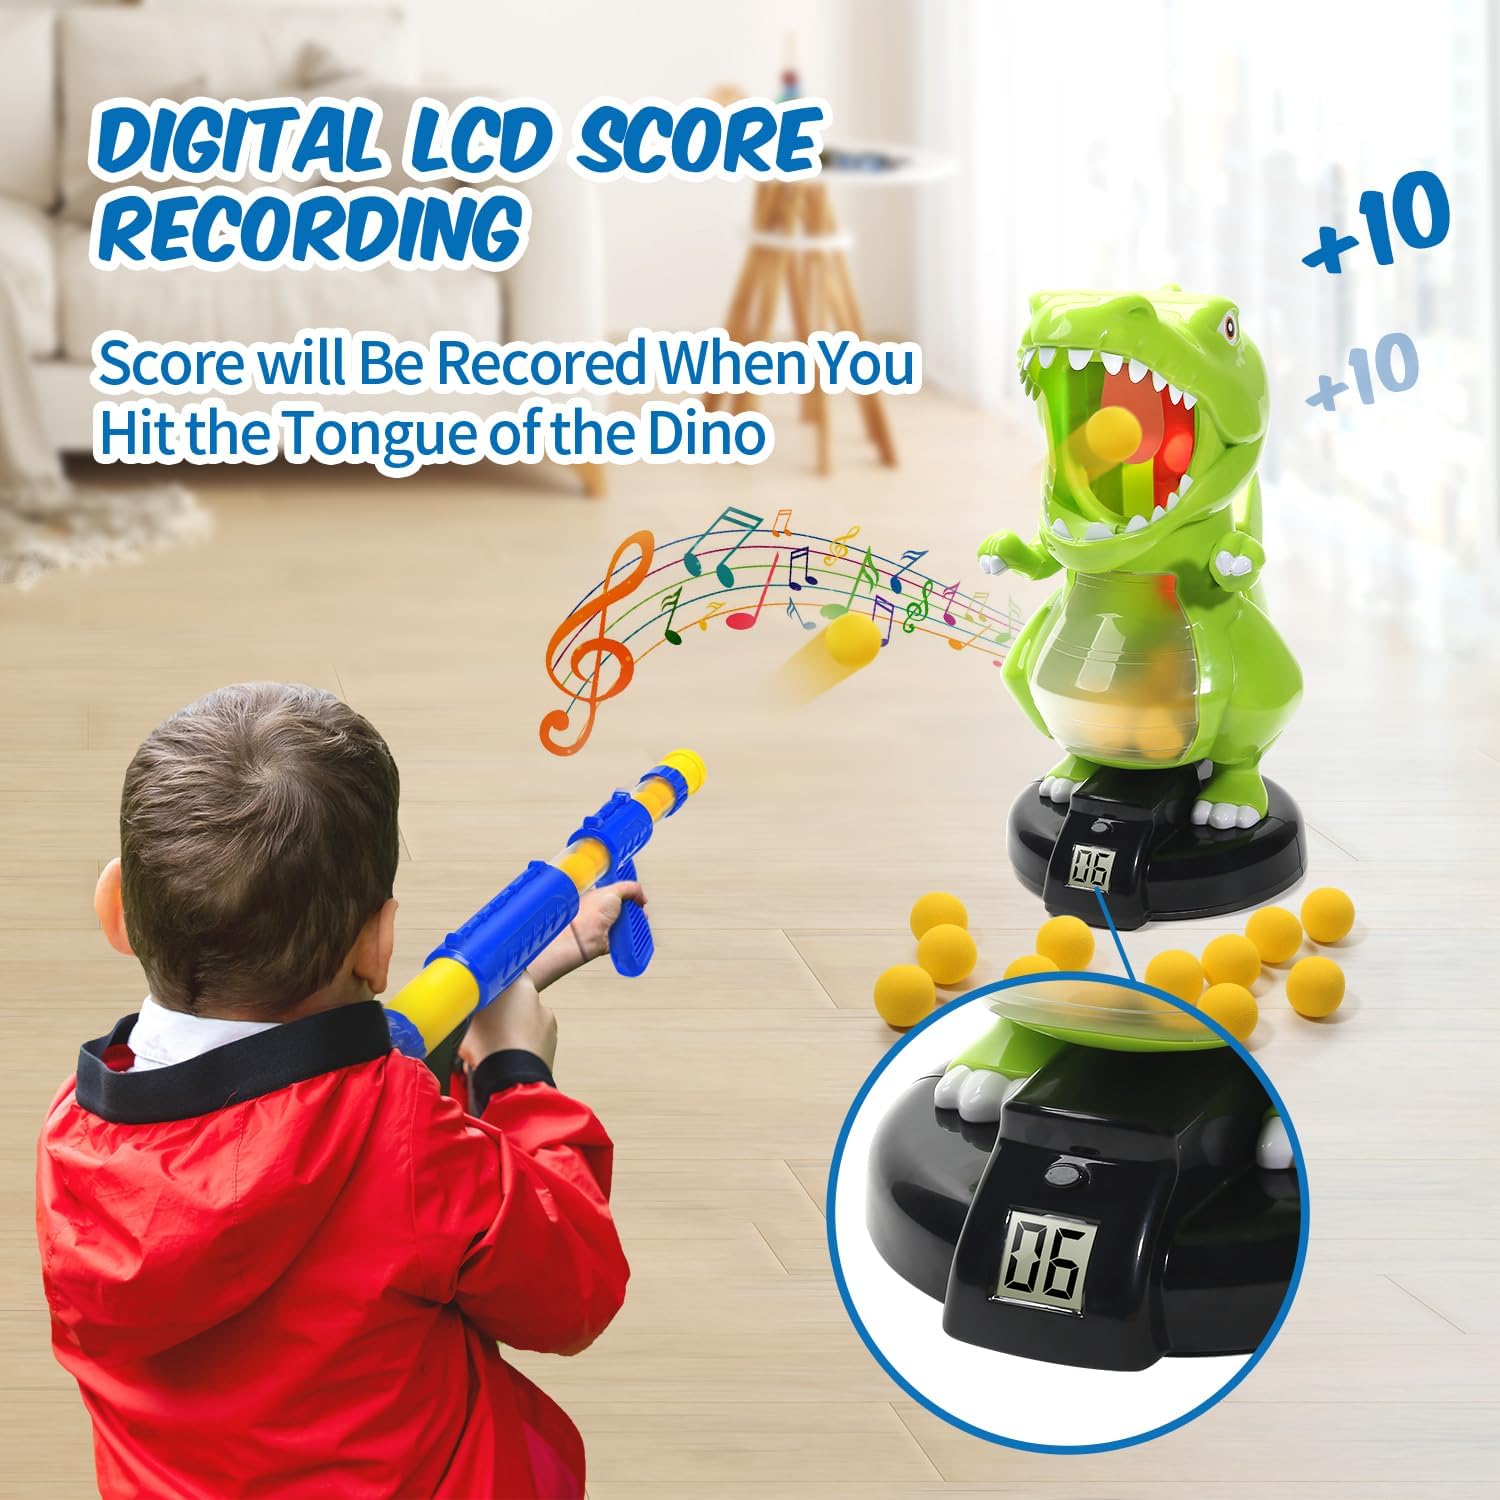 Dinosaur Shooting Toys, Electronic Kids Target Games w/ Air Pump Gun, LCD Score Record, 24 Foam Balls - Cykapu